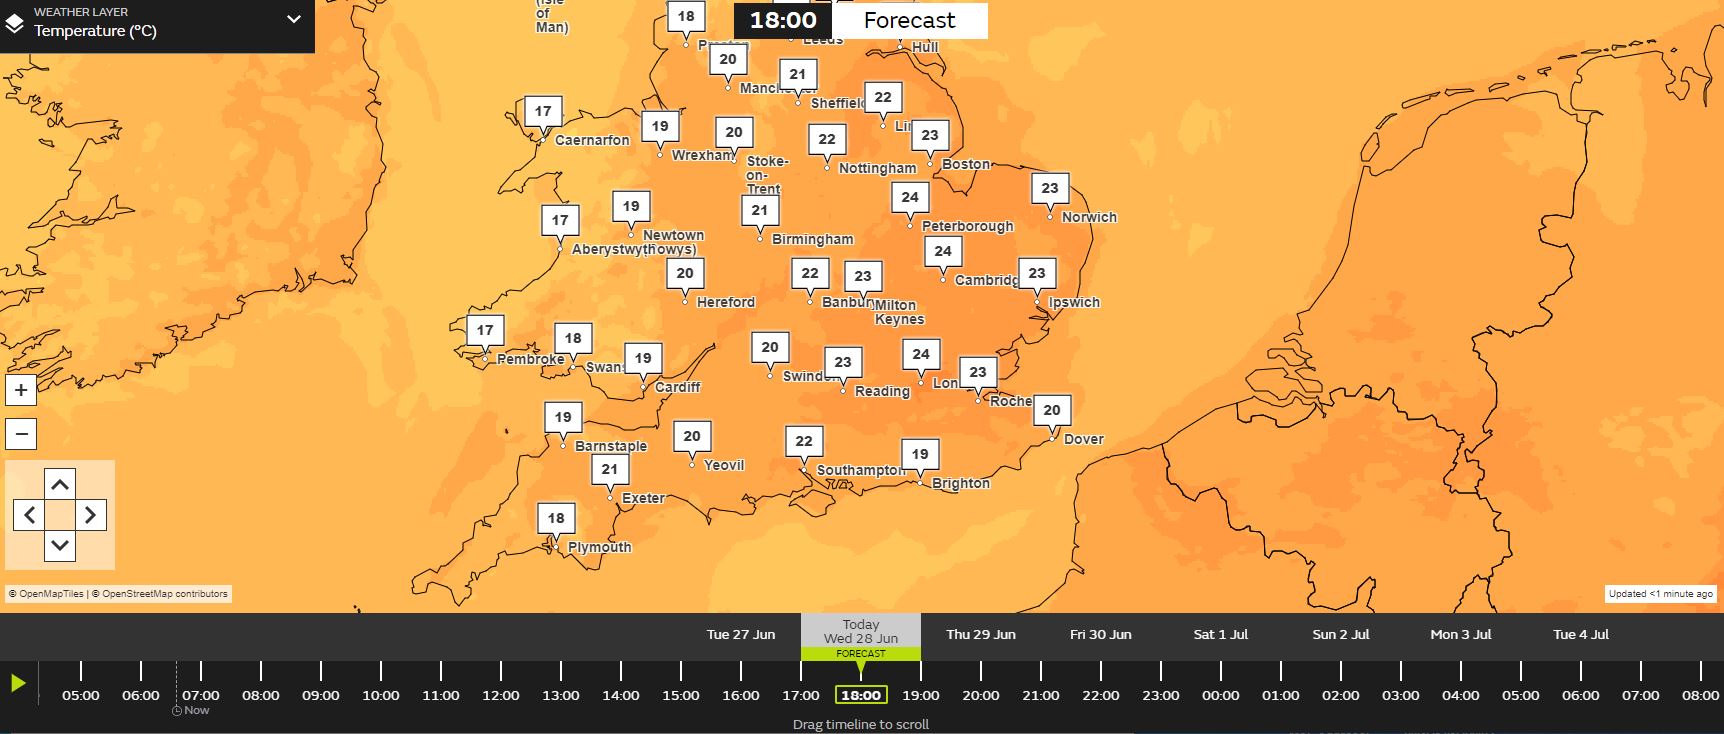 Es wird erwartet, dass die Temperaturen heute gegen 18 Uhr in London einen Höchstwert von 24 °C erreichen